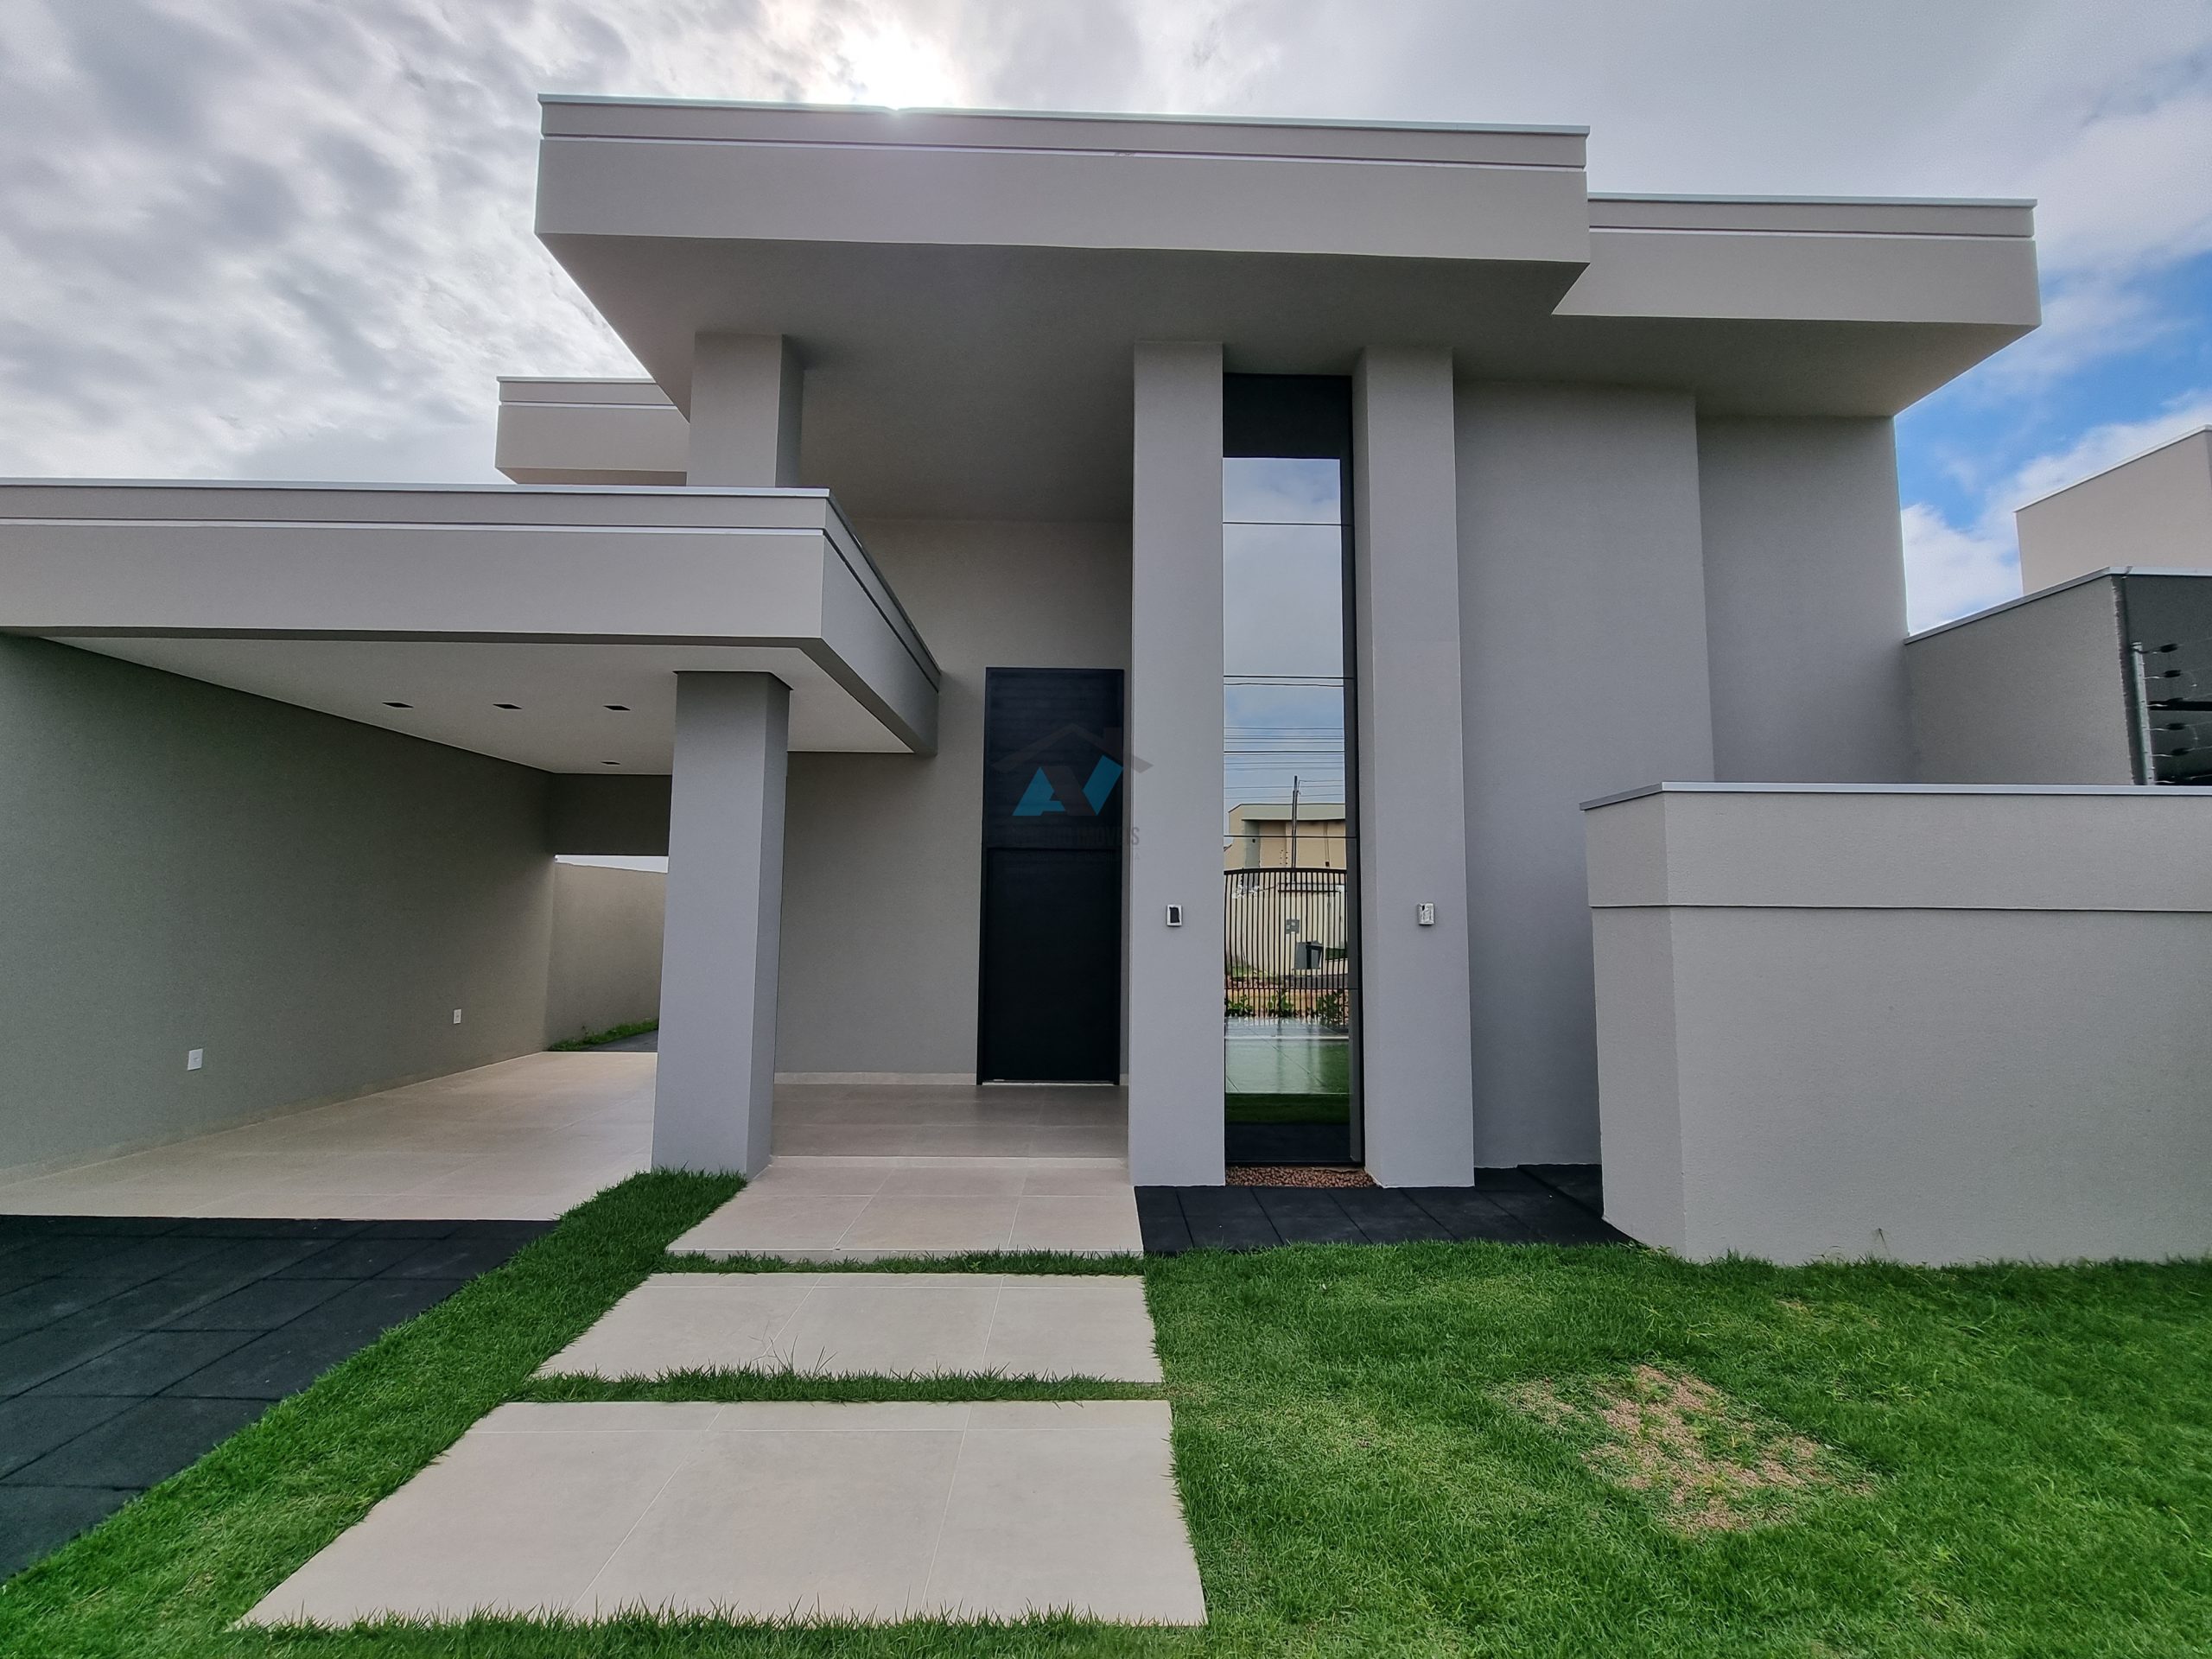 Cod. 176 – Casa pronta no Parque Eldorado com ótimo acabamento e fachada moderna